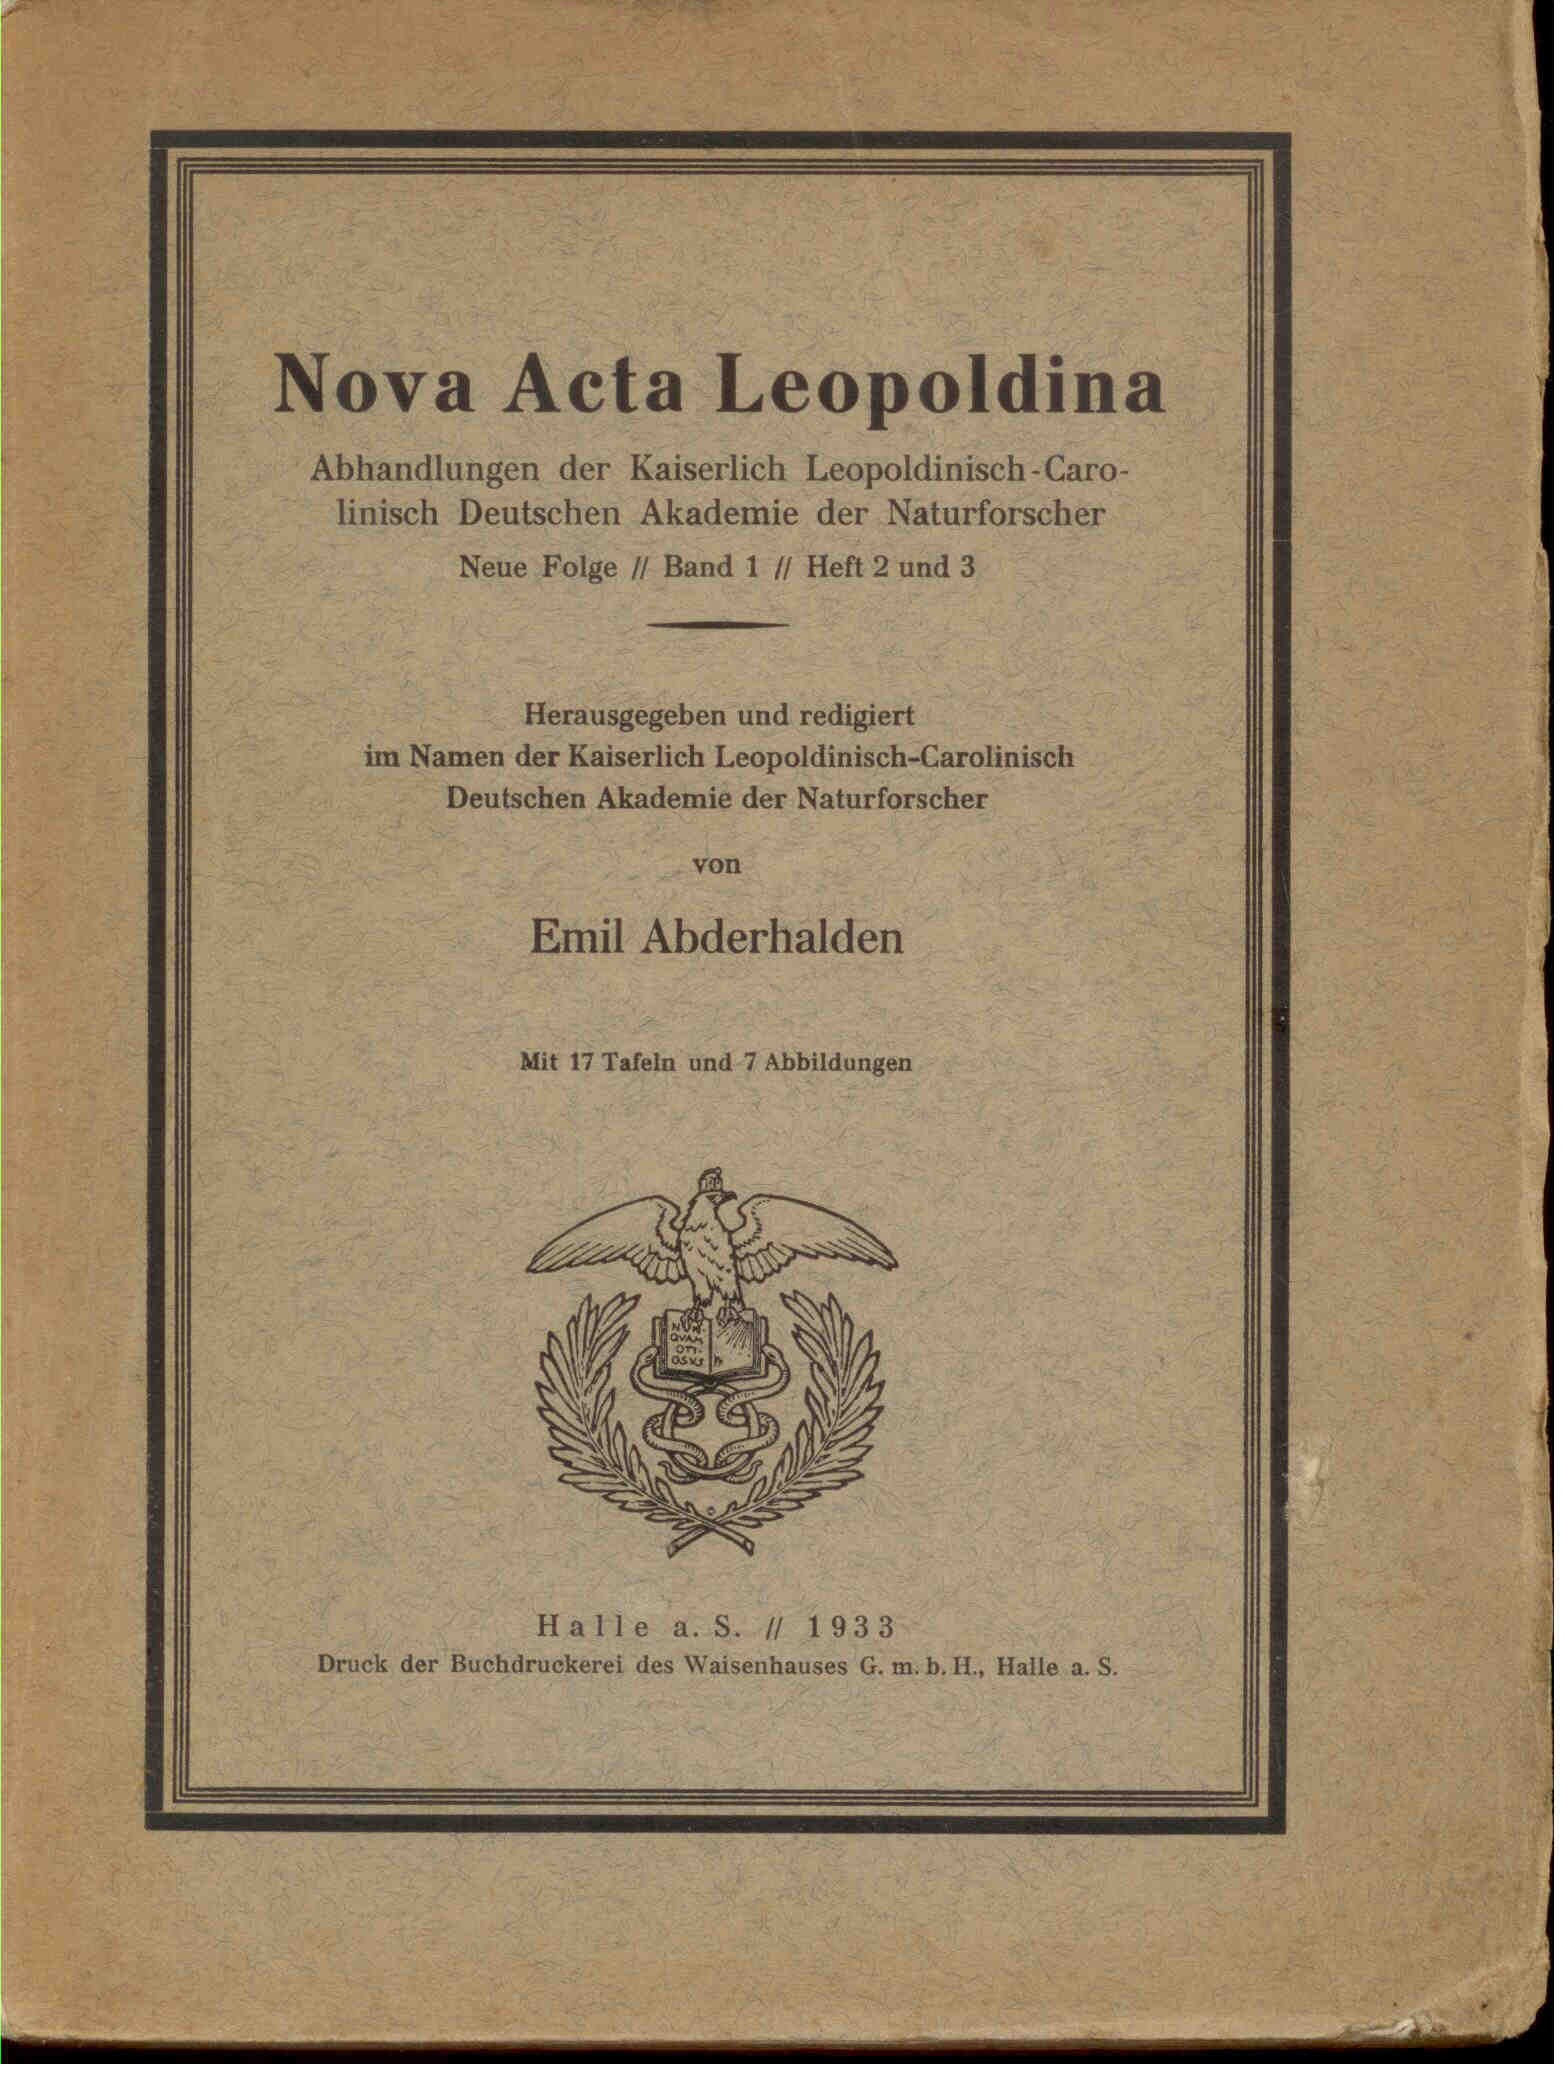 Abderhalden, E.: Nova Acta Leopoldina. Abhandlungen der Kaiserlich Leopoldinisch-Carolinisch Deutschen Akademie der Naturforscher. Neue Folge // Band 1 // Heft 2 und 3.